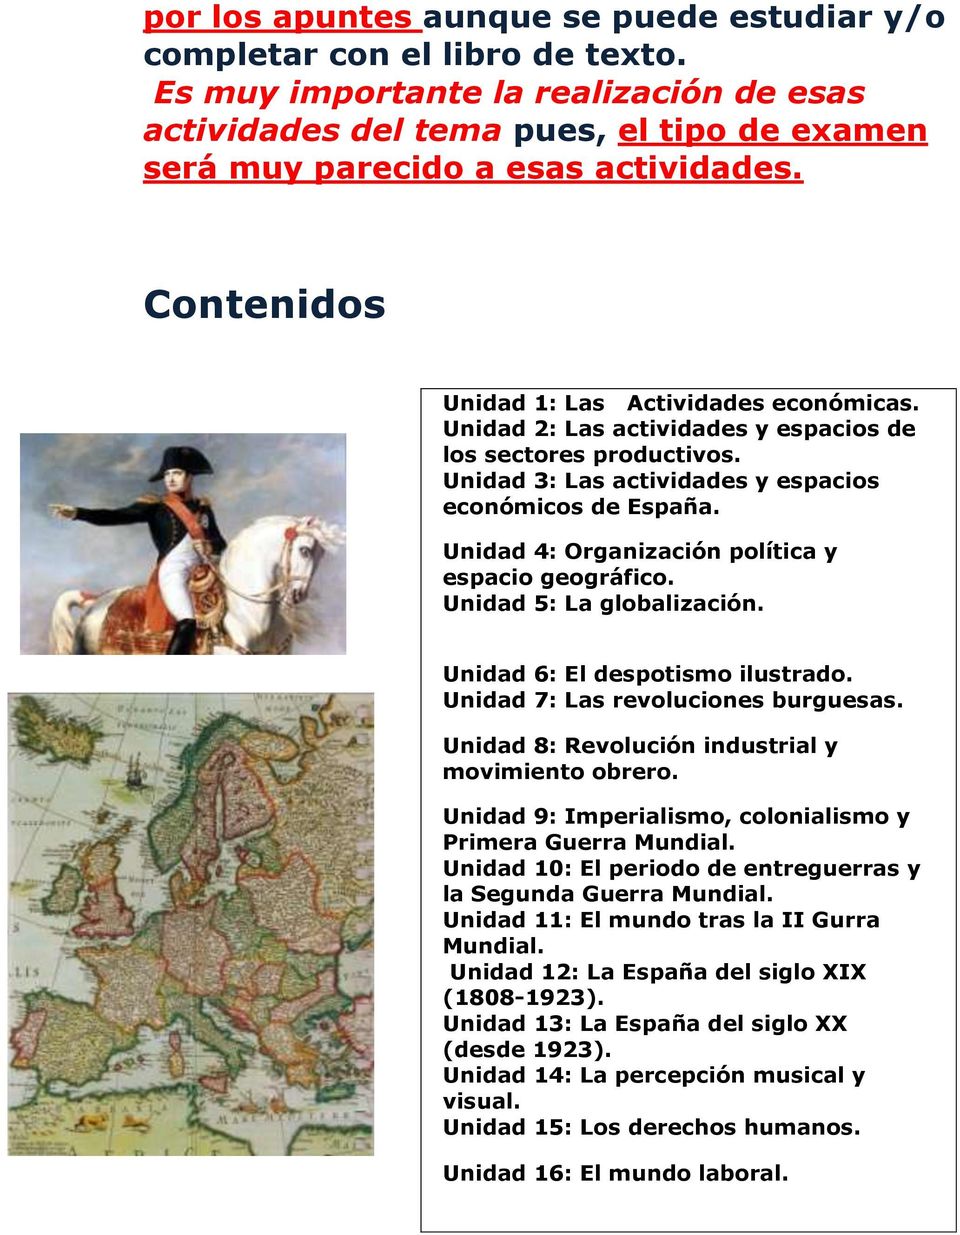 Unidad 2: Las actividades y espacios de los sectores productivos. Unidad 3: Las actividades y espacios económicos de España. Unidad 4: Organización política y espacio geográfico.